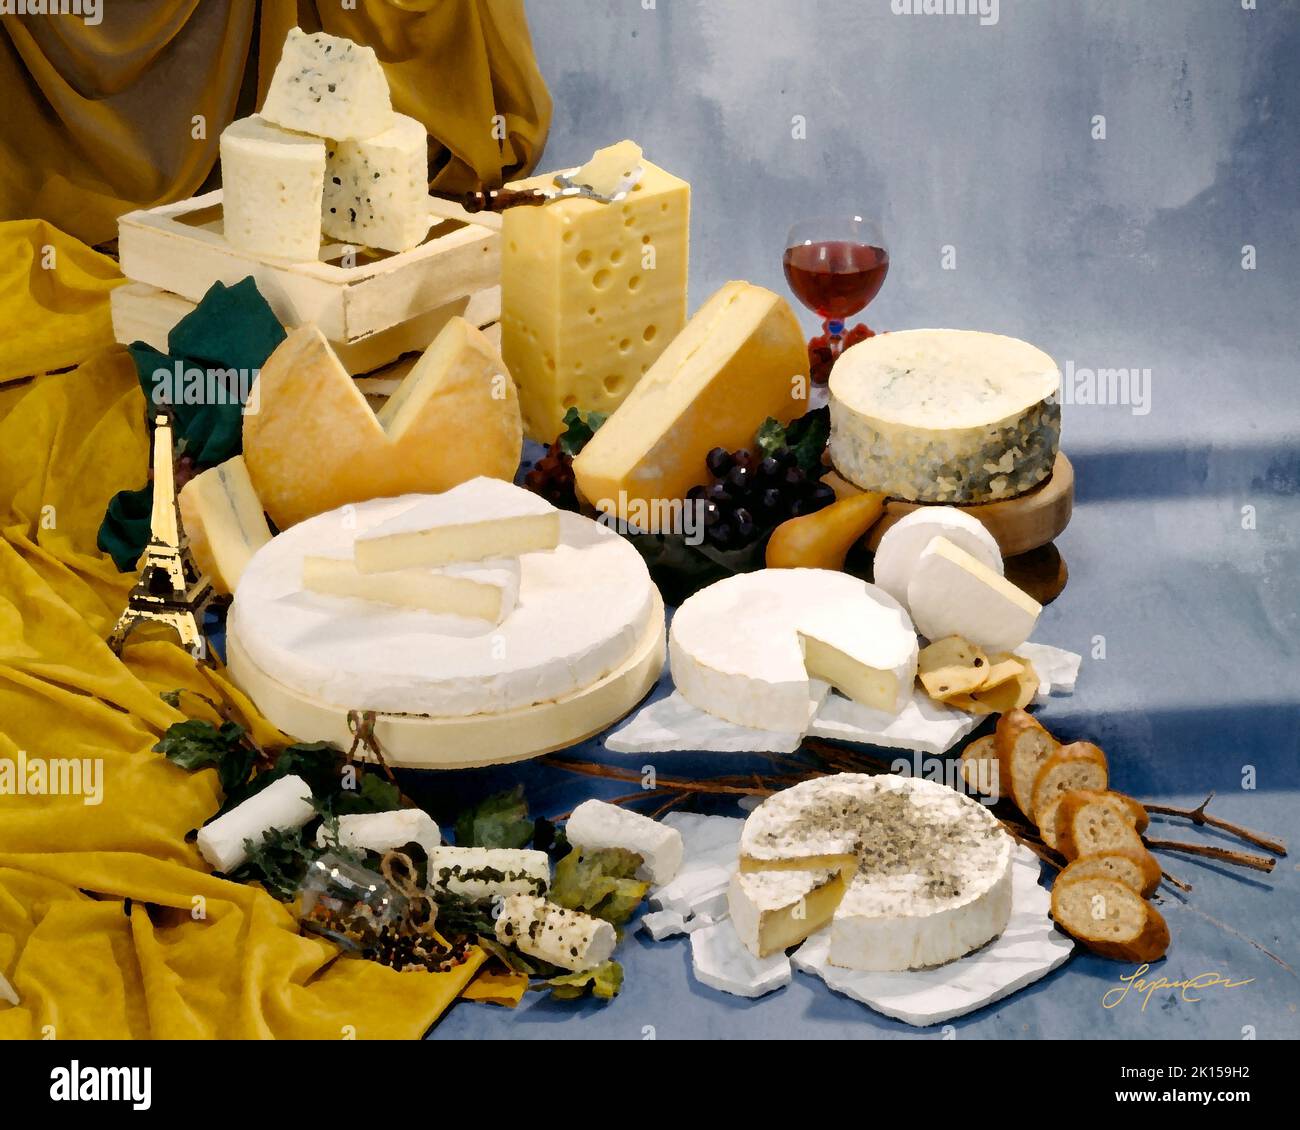 Eine Gruppe französischer Käsesorten in einem Farbfoto auf einem kühlen, grau-blauen, fleckigen Hintergrund. foto auf dem studiotisch. Mit dem Filter für Malstile in Photoshop. Stockfoto